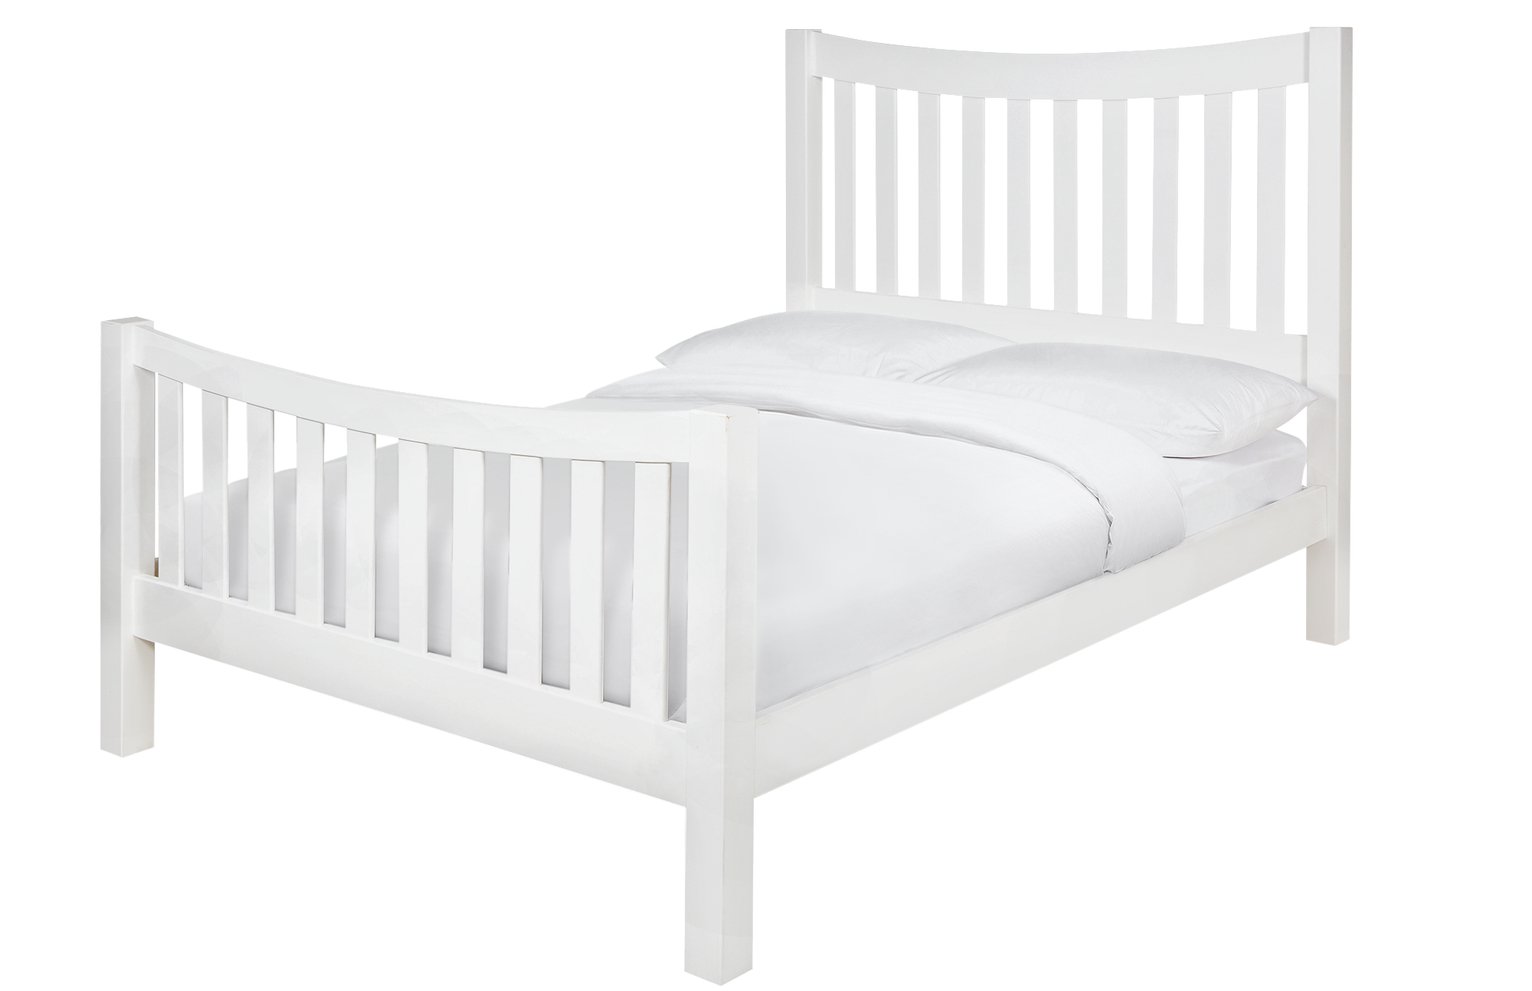 Argos Home Rowan Kingsize Bed Frame - White